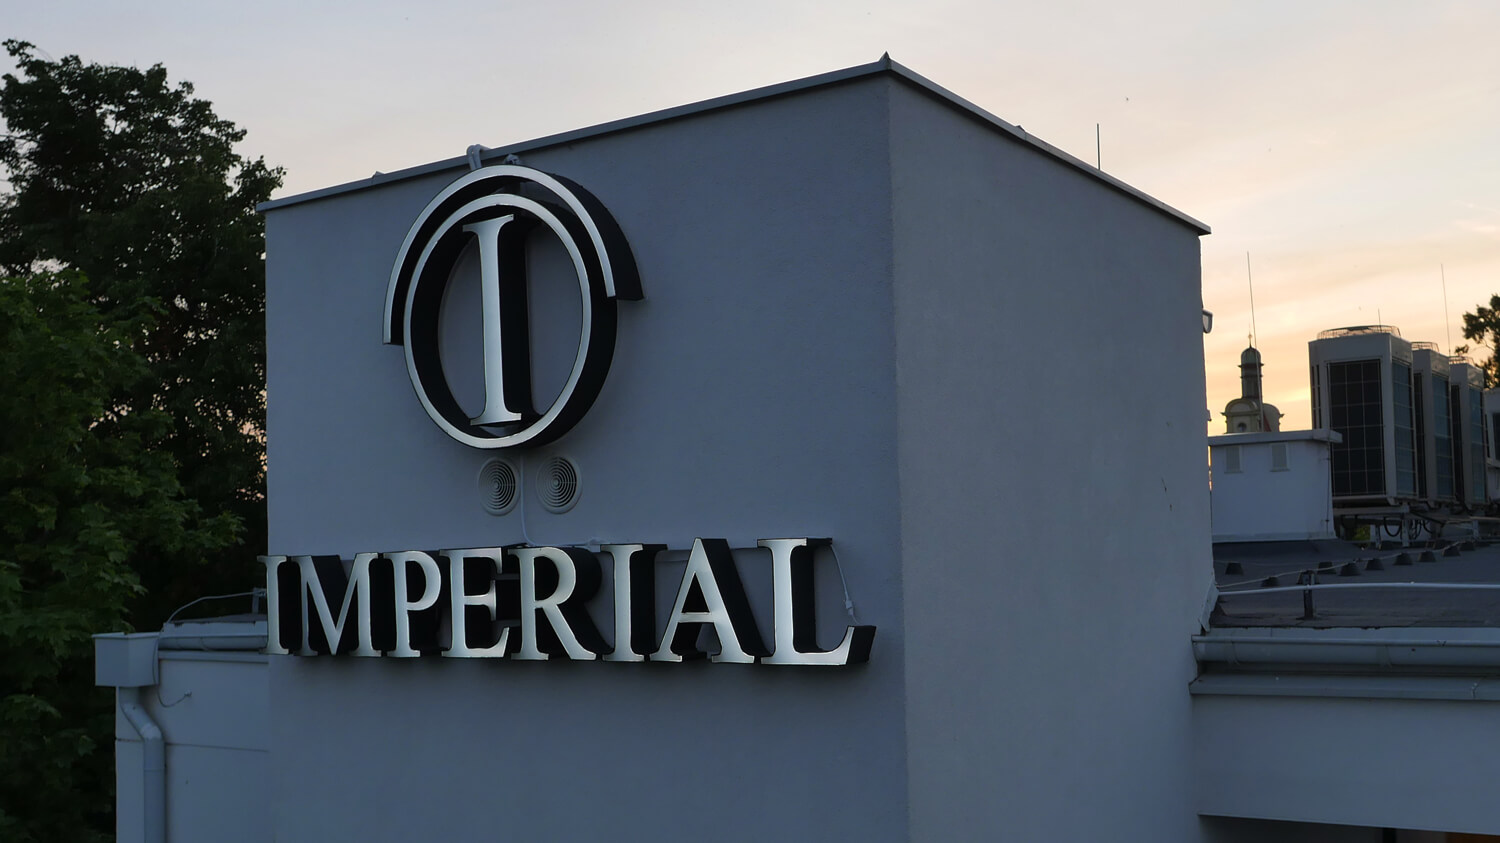 Imperial - Hotel Imperial - przestrzenne litery świetlne umieszczone na ścianie